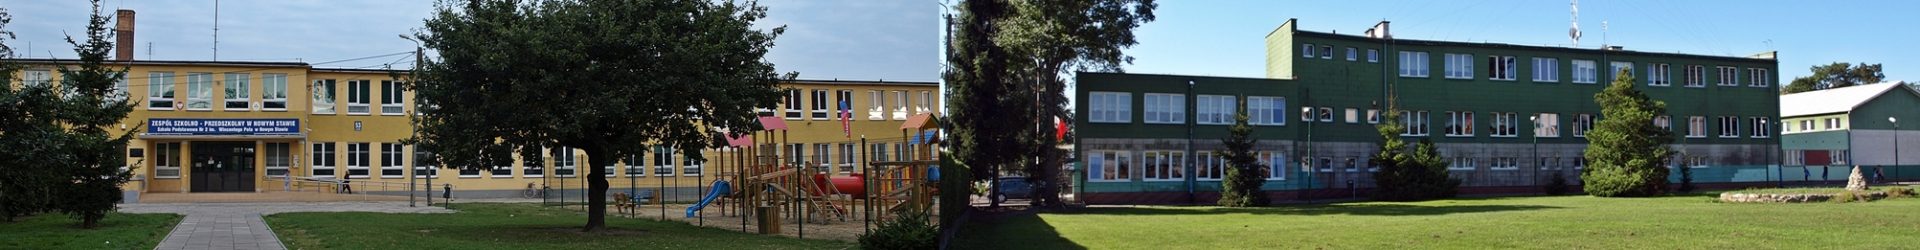 Zagłosuj na projekt “Zachowanie wielokulturowego dziedzictwa Żuław” w plebiscycie Sztormy 2016